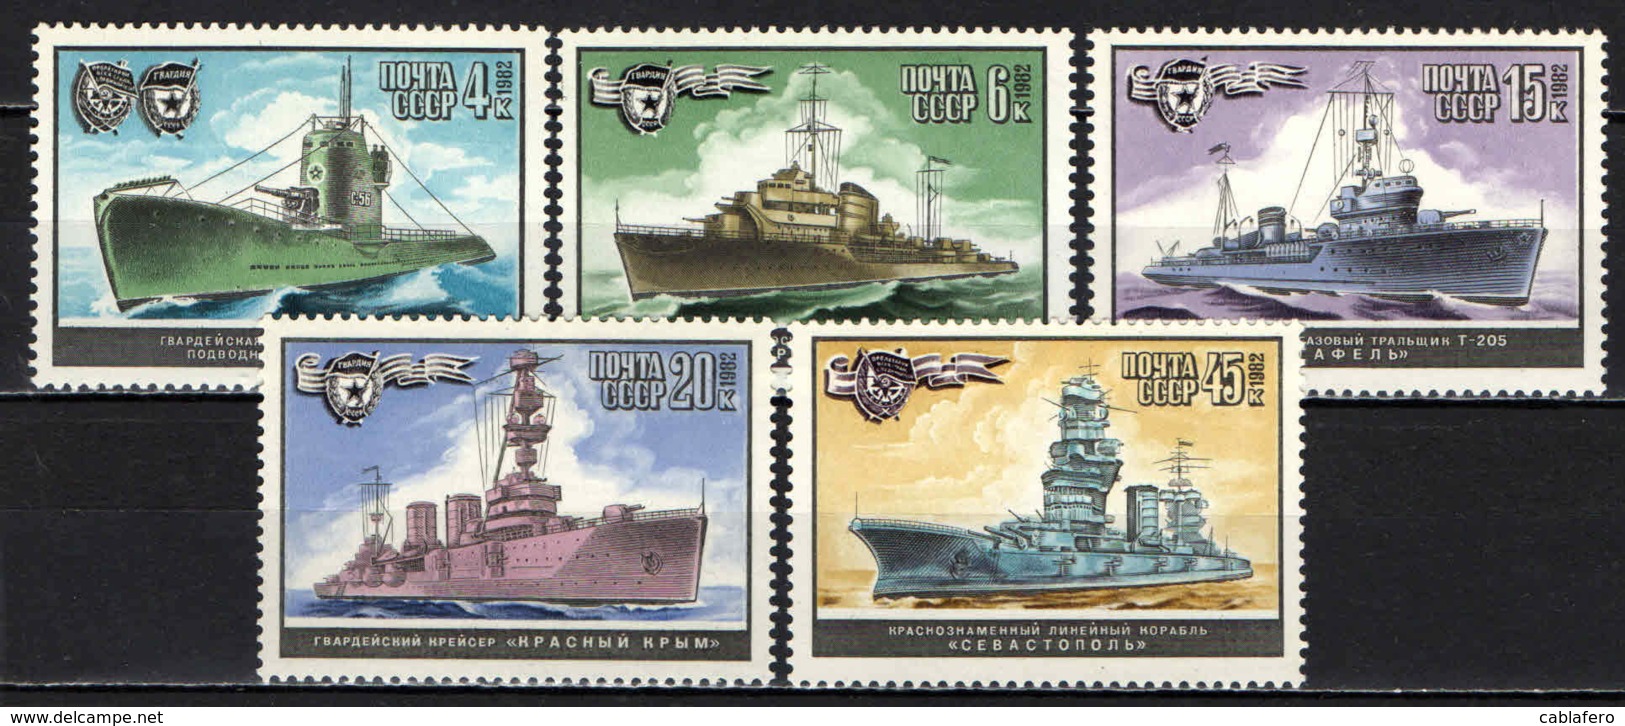 URSS - 1982 - World War II Warships - MNH - Ongebruikt